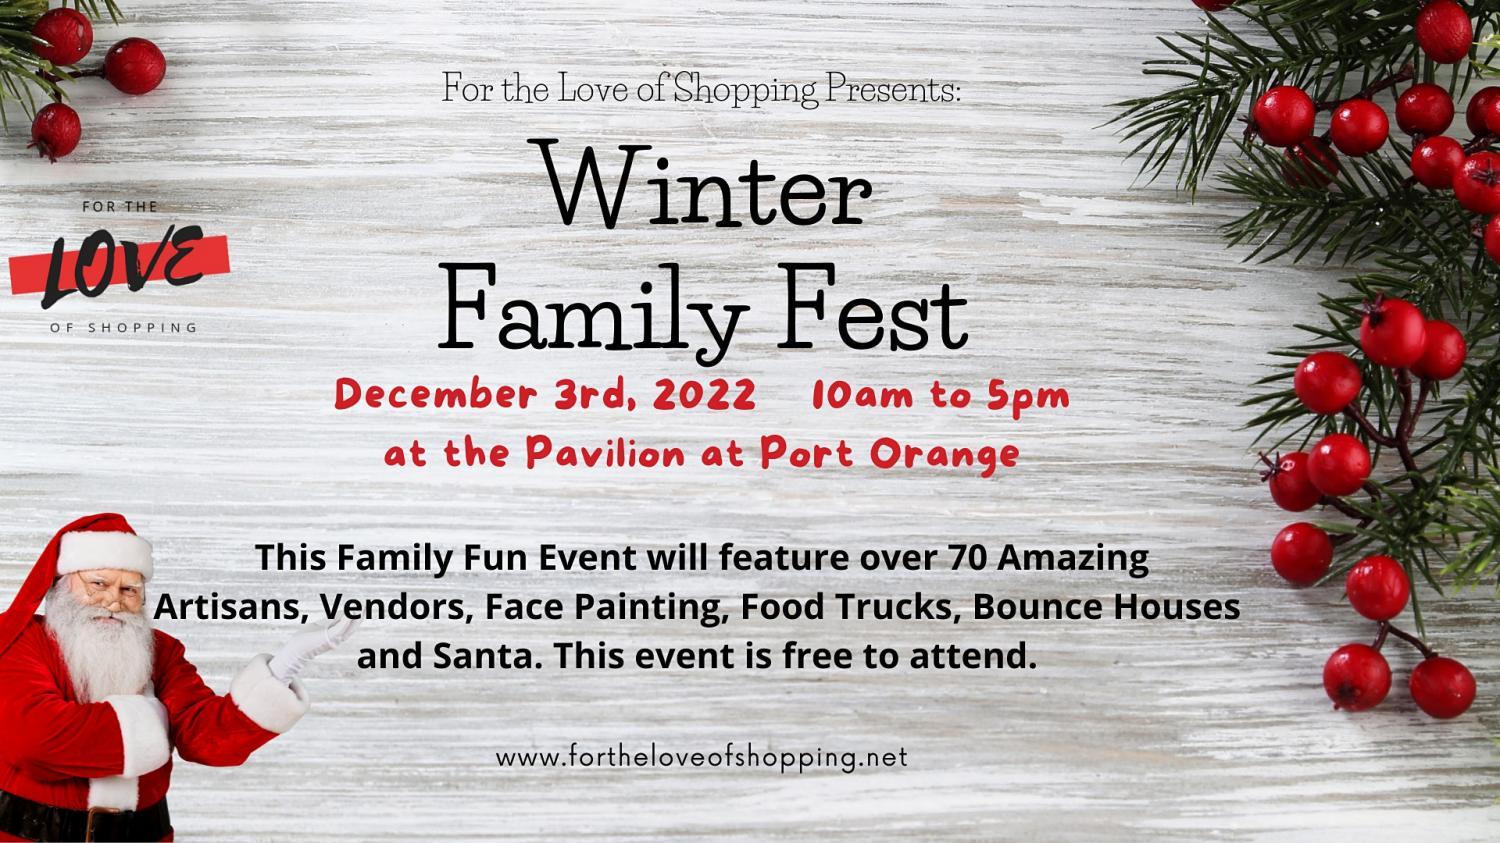 Winter Family Fest
Sat Dec 3, 10:00 AM - Sat Dec 3, 5:00 PM
in 44 days